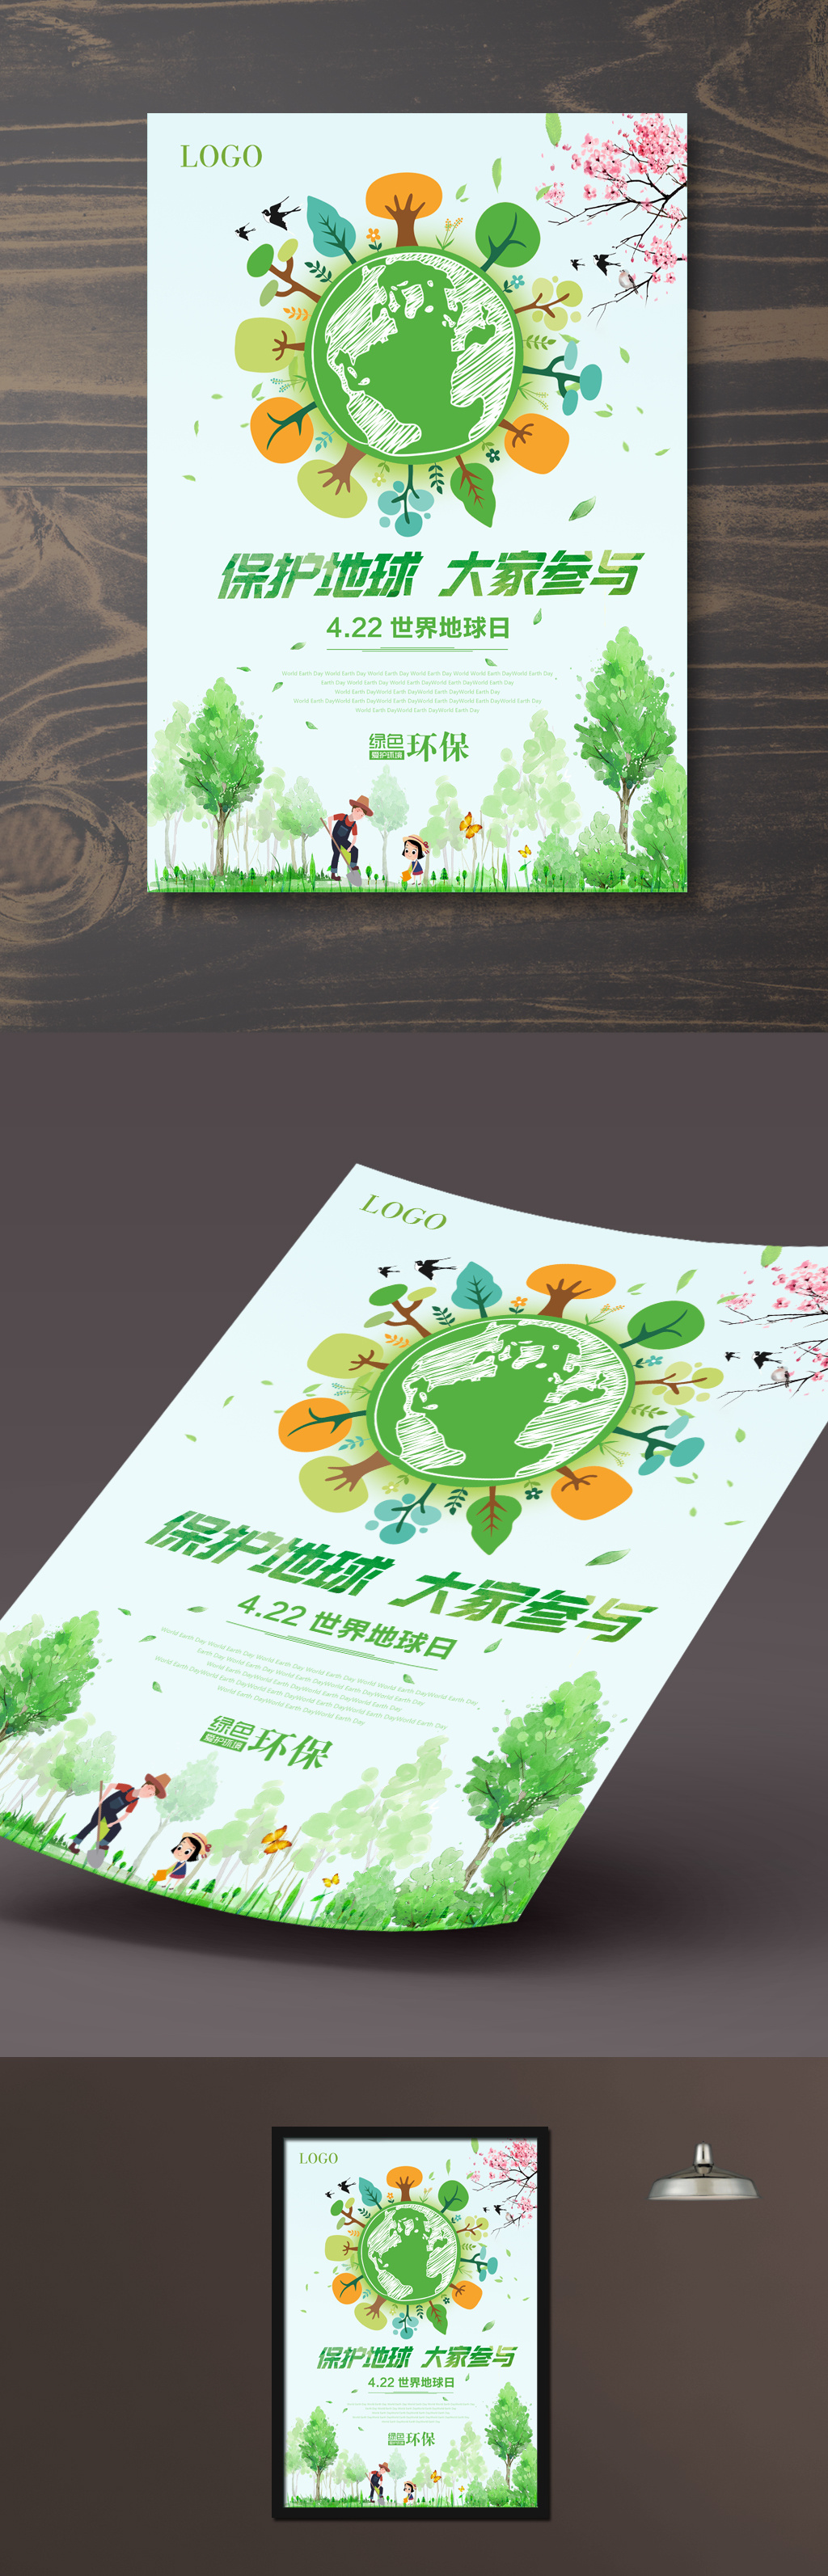 地球日环境保护海报设计